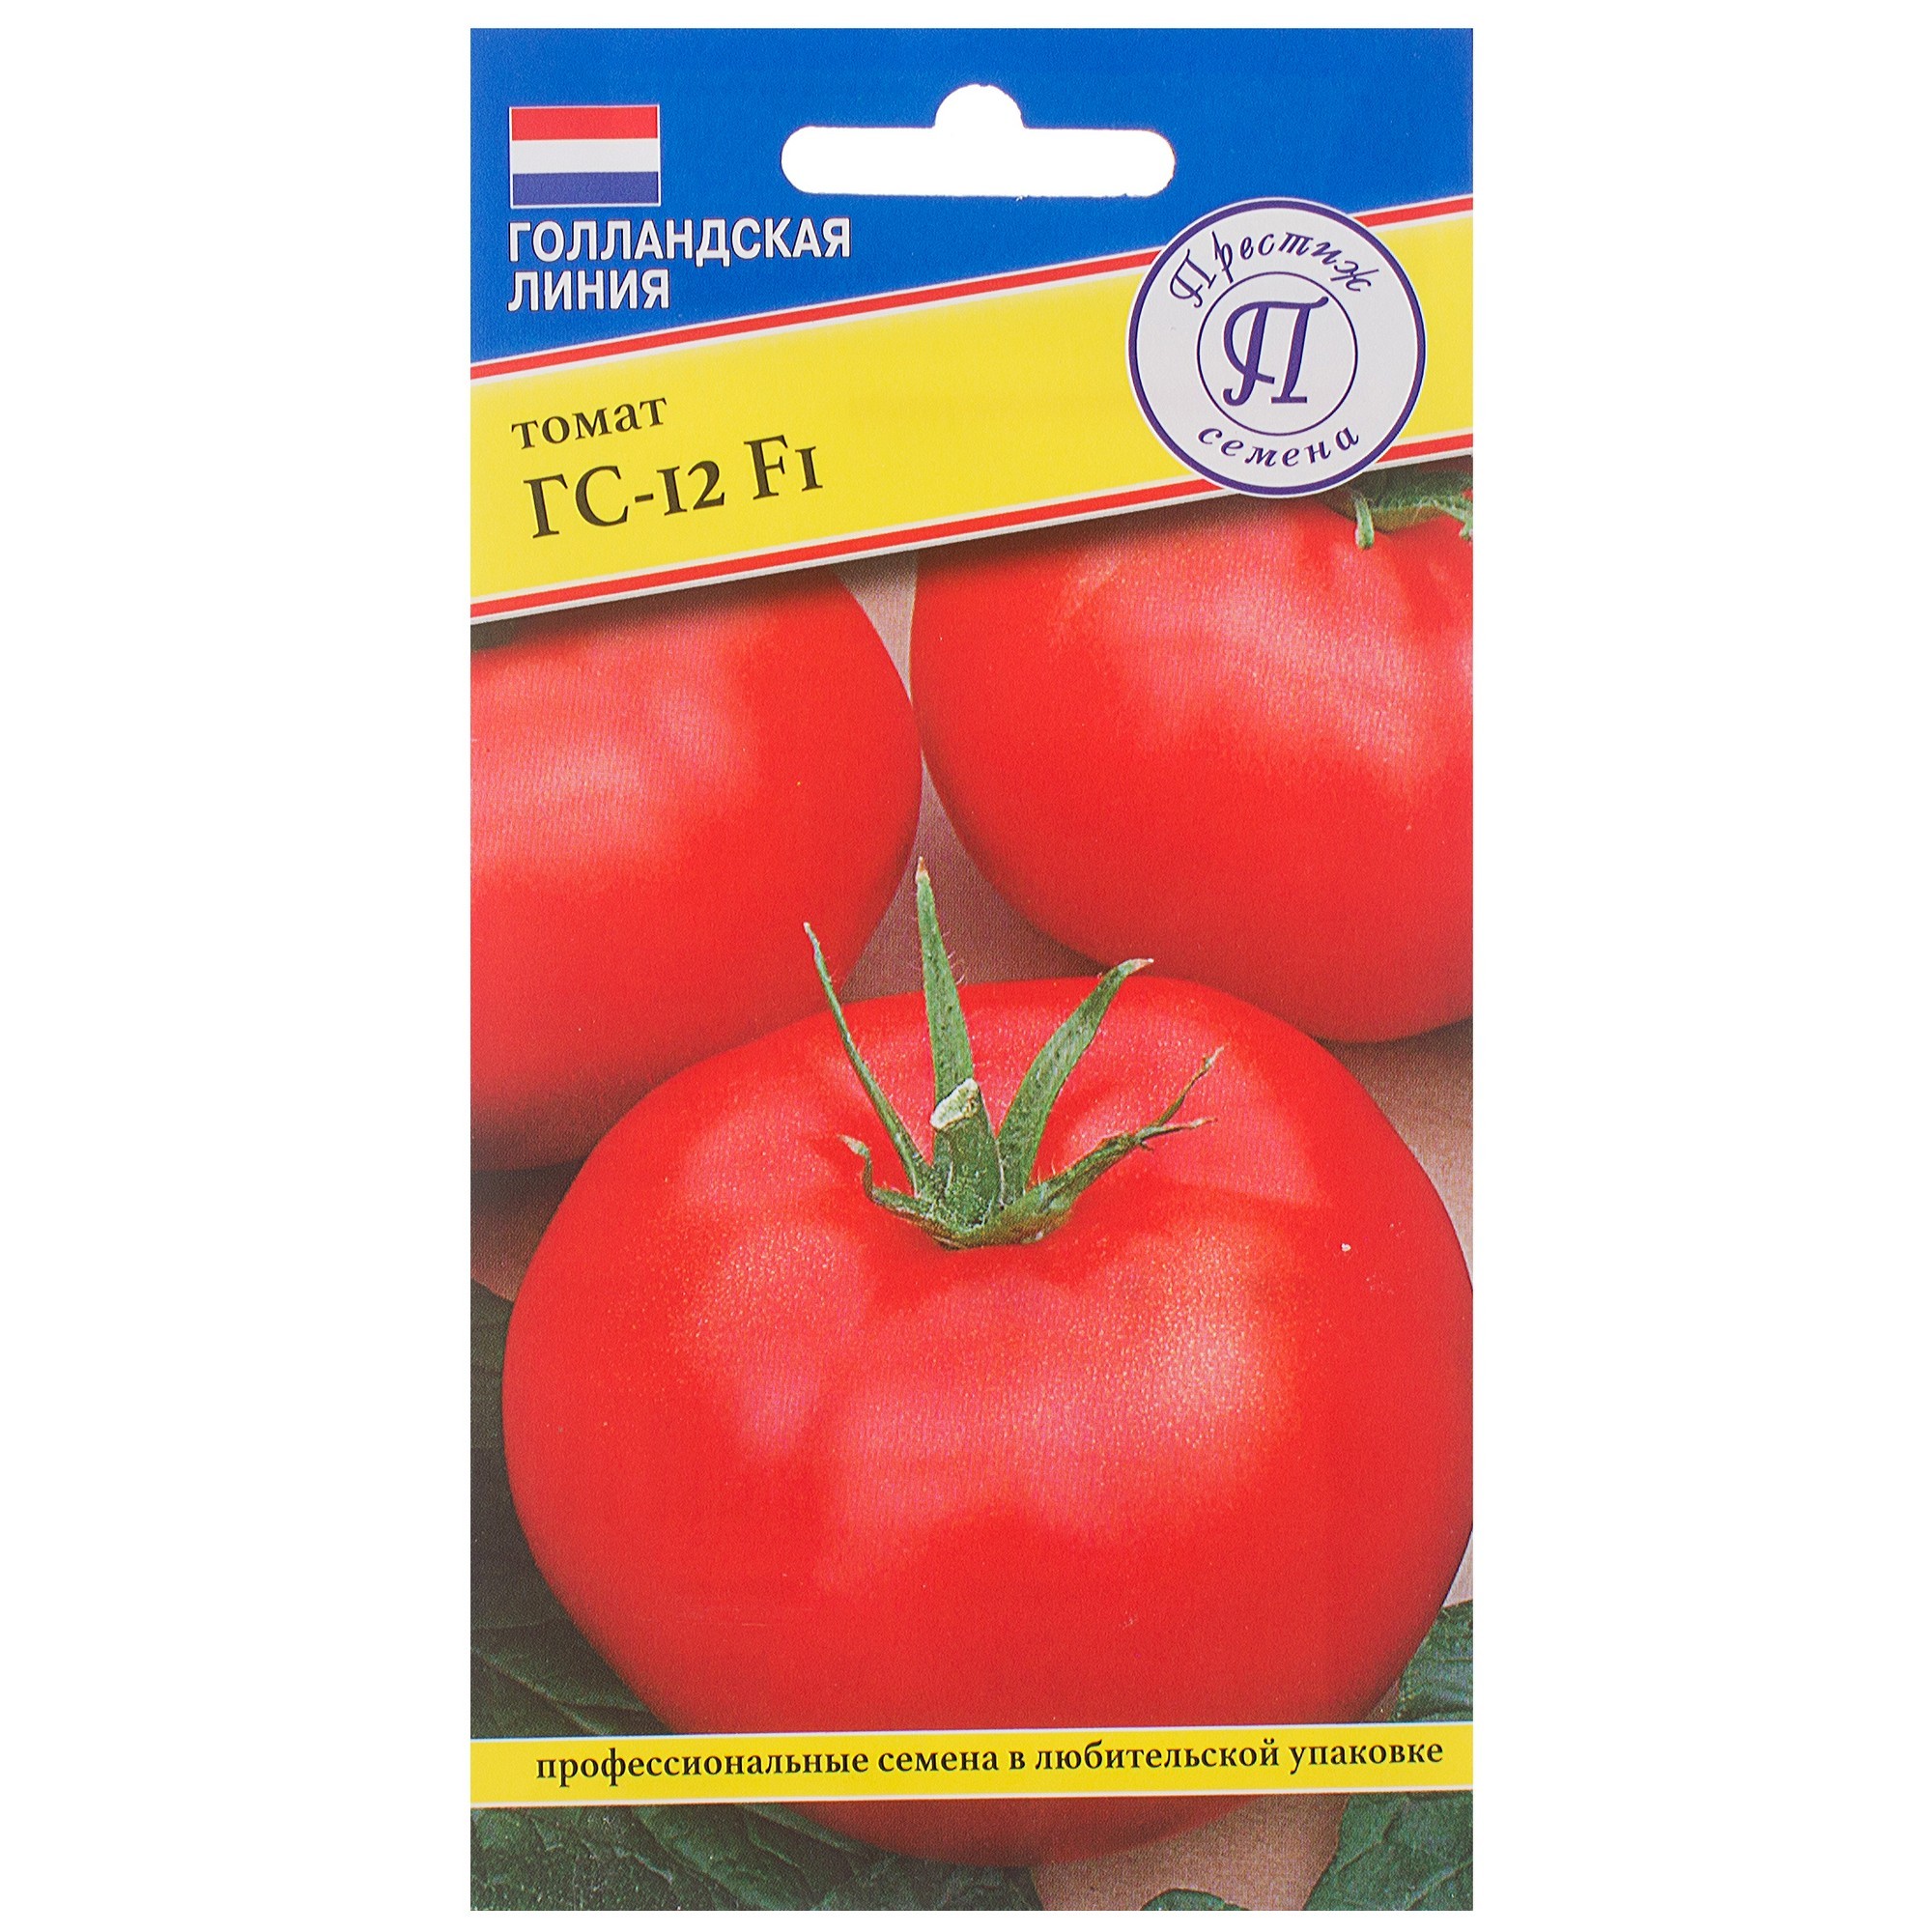 ᐉ томат "золотая теща": описание гибридного сорта f1, рекомендации по выращиванию, характеристики плодов-помидоров - orensad198.ru